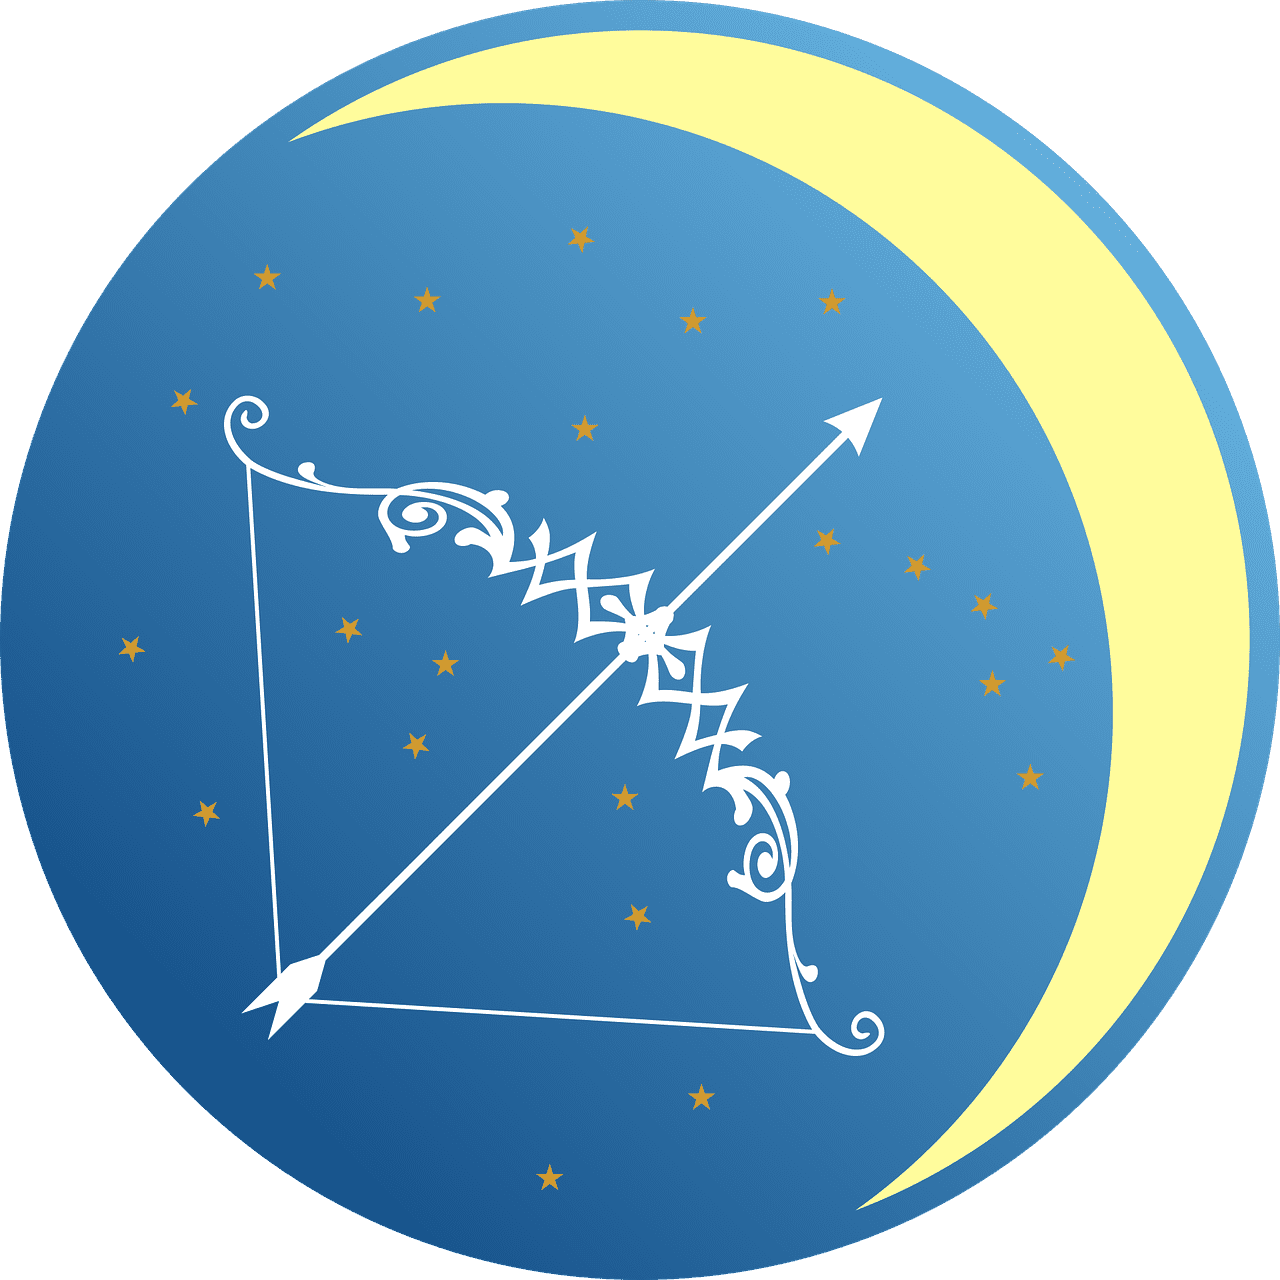 A depiction of the Sagittarius star sign | Photo: Pixabay/13smok